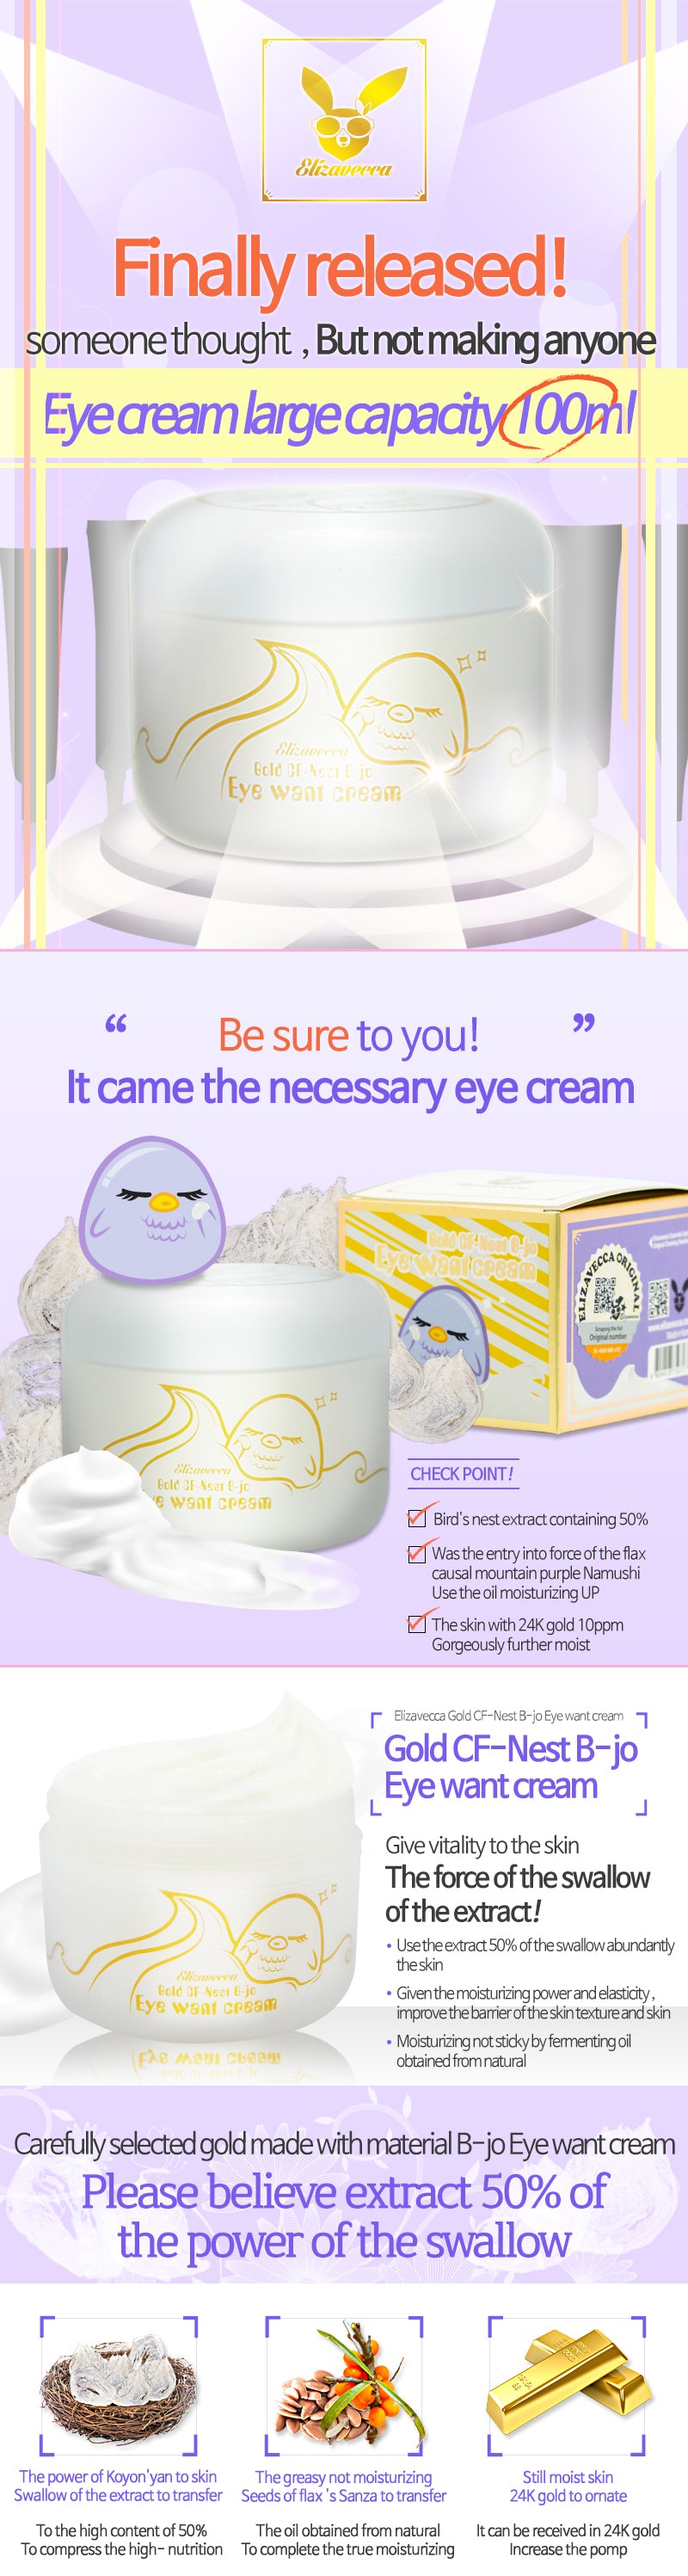 Elizavecca_Gold CF Nest B JO Eye Want Cream 100ml_1